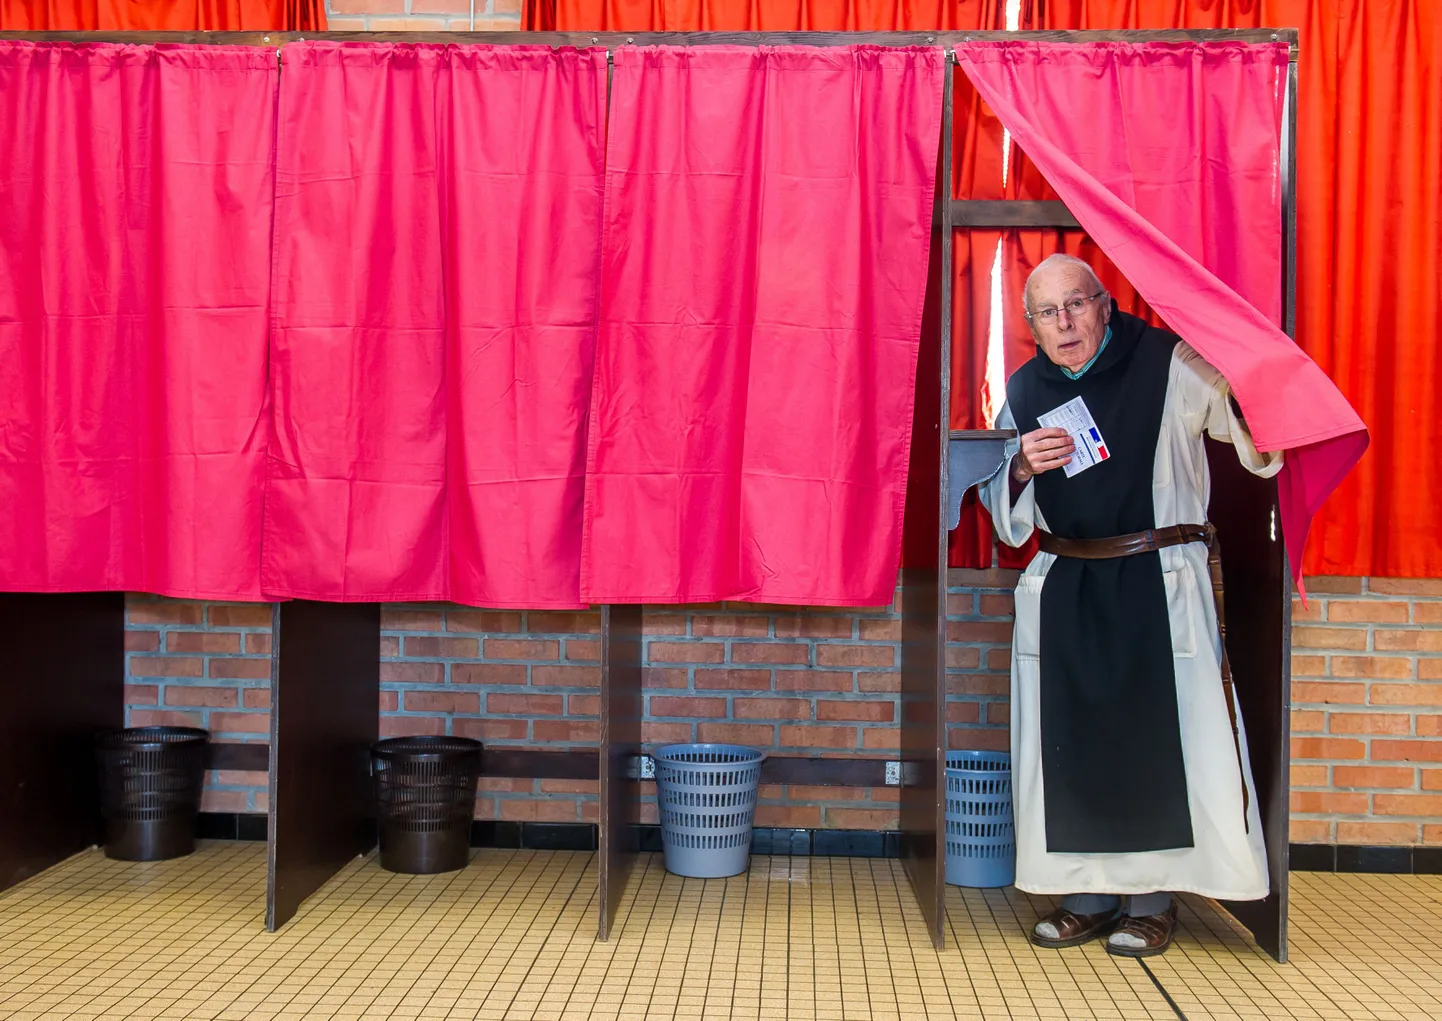 Prantsuse Monts des Cats'i kloostri munk täna kohalikel valimistel hääletamas.